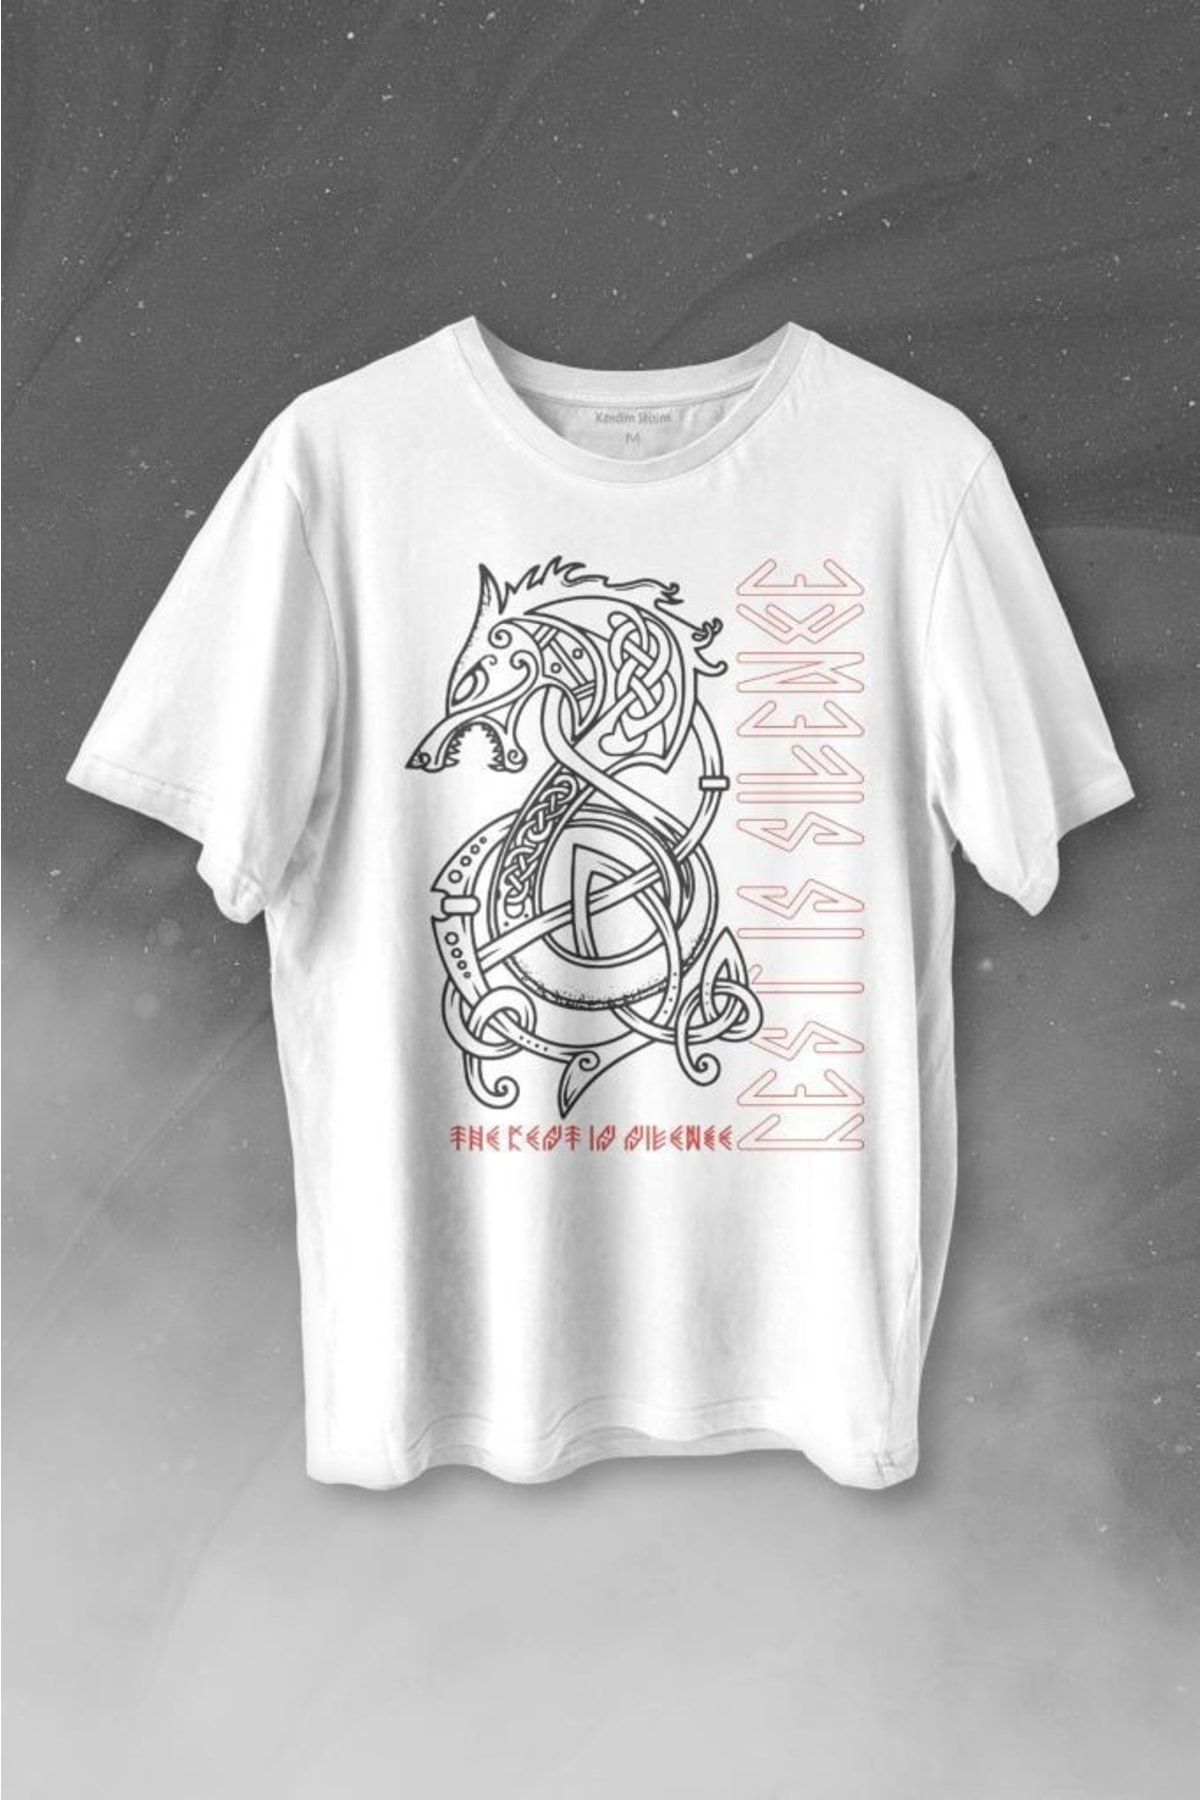 Kendim Seçtim Viking Fenrir Wolf Vikings Kurt Kafa Street Baskılı Tişört Unisex T-shirt